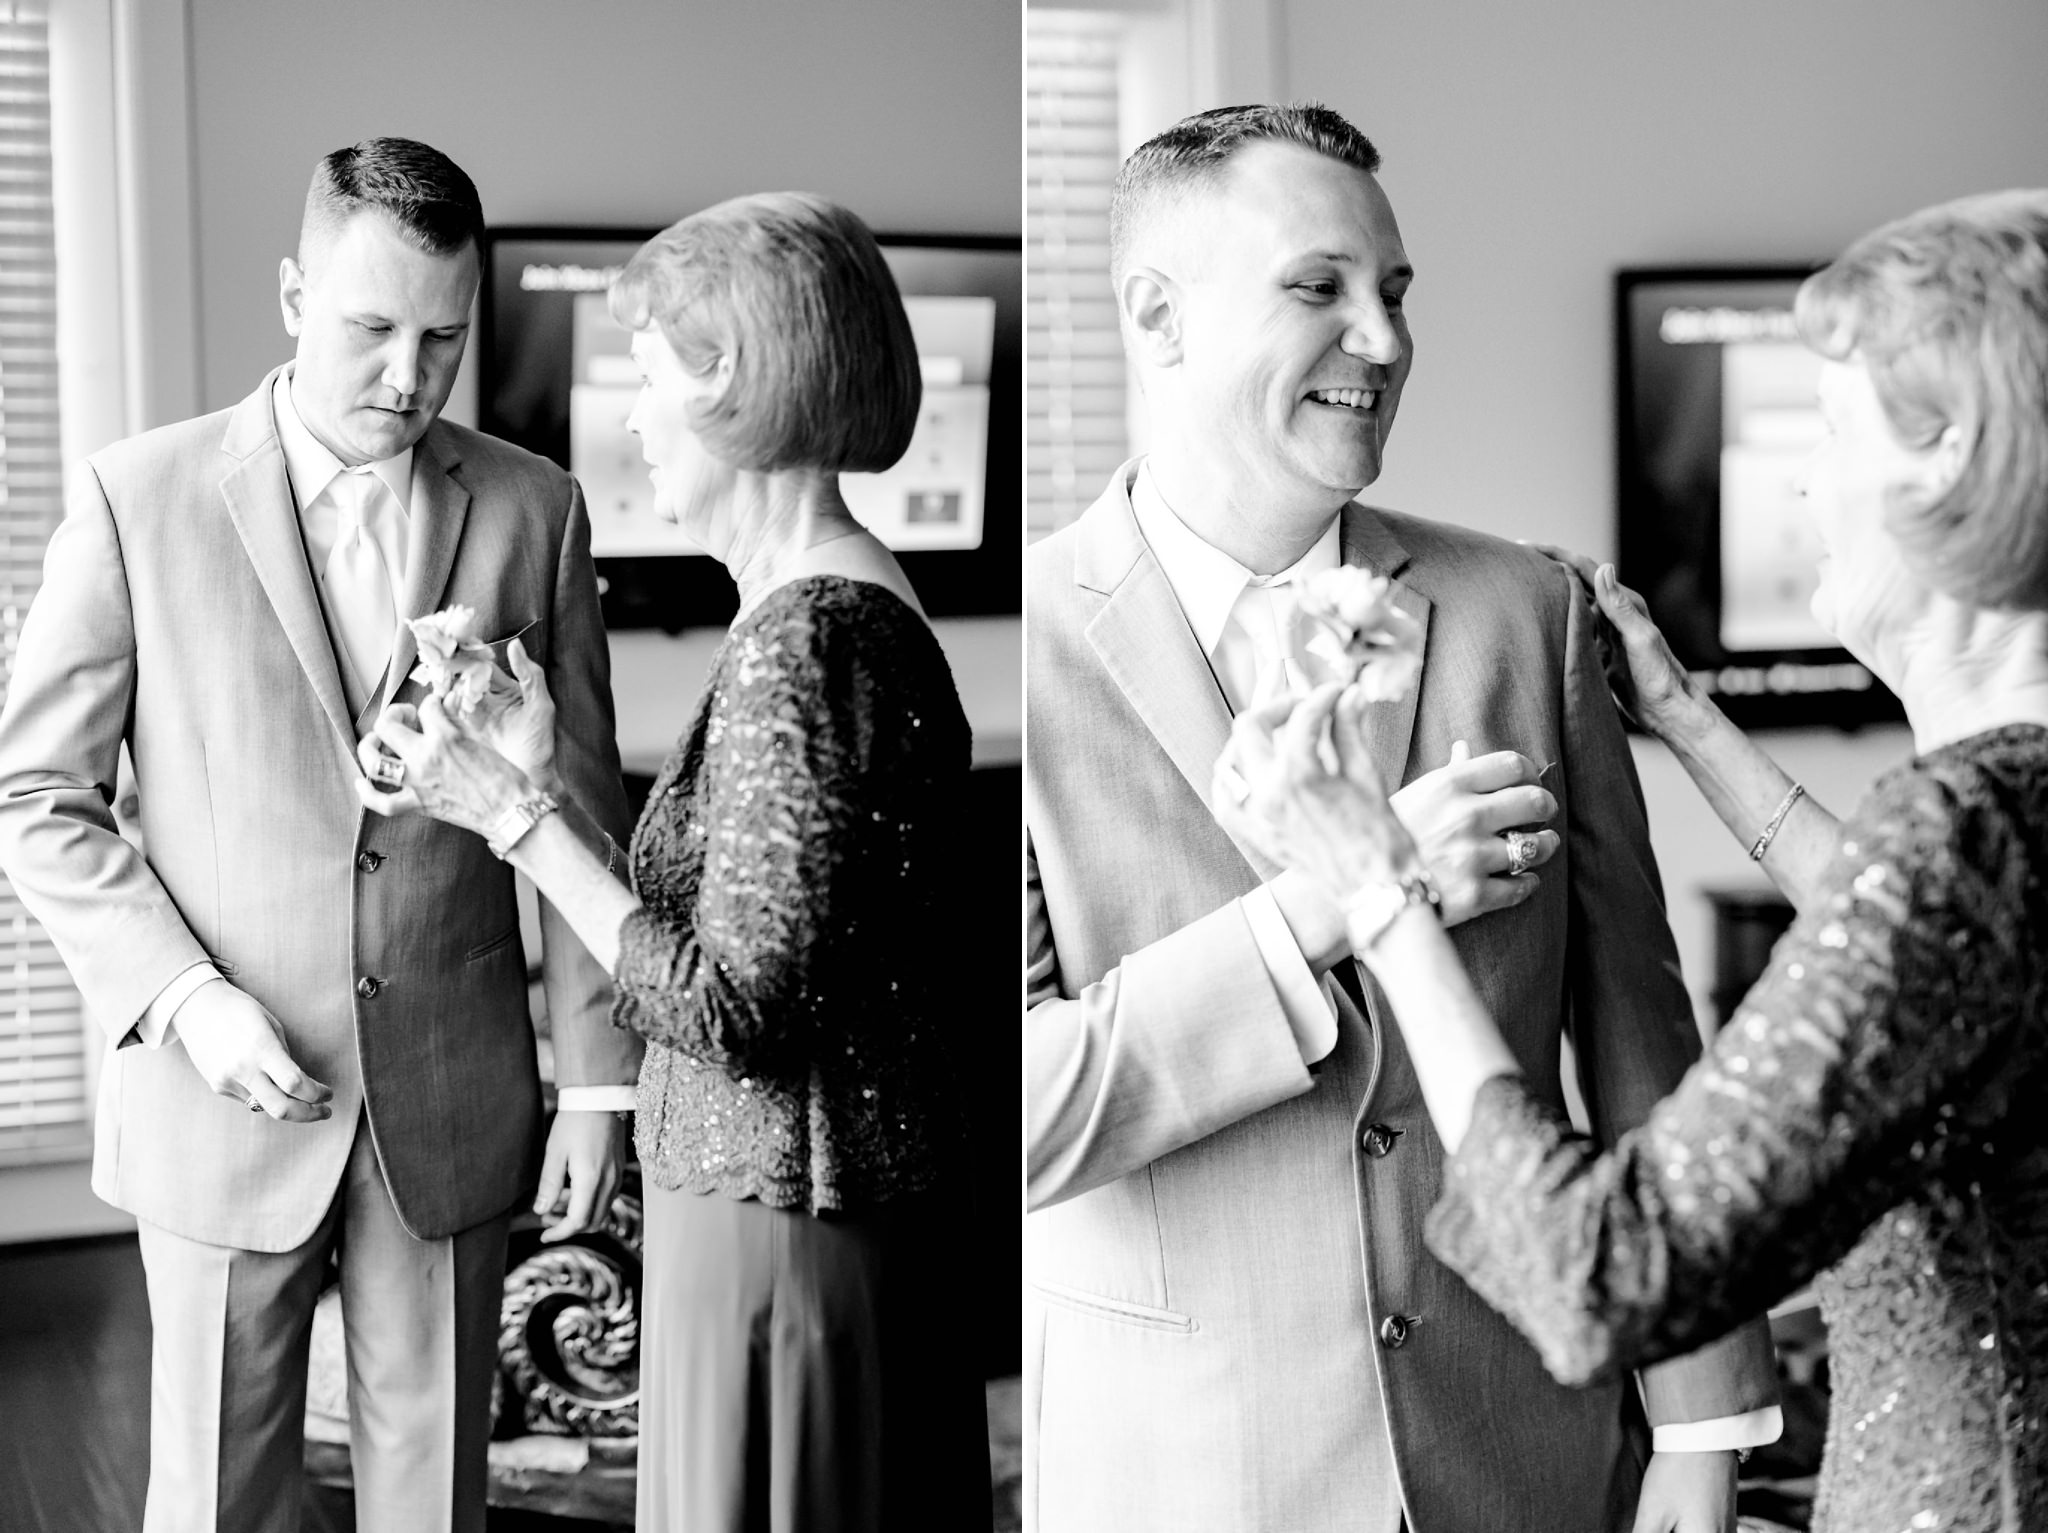 A blush and gold wedding at Hidden Falls in Spring Branch, TX by Dawn Elizabeth Studios, San Antonio Wedding Photographer